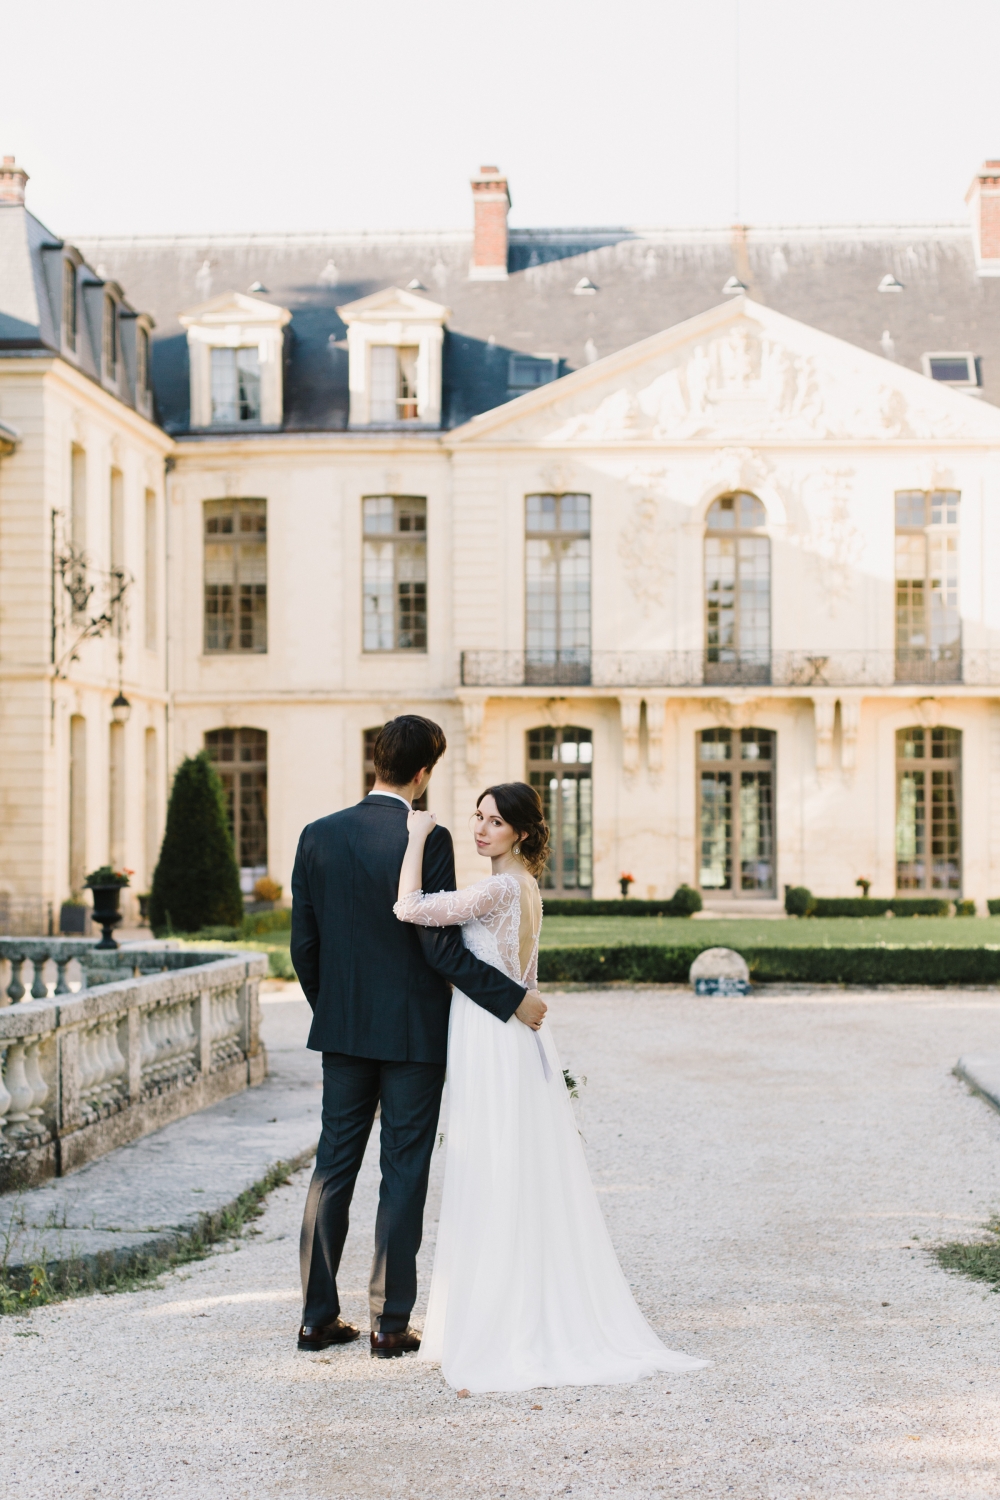 Свадебная церемония для двоих в замке Франции